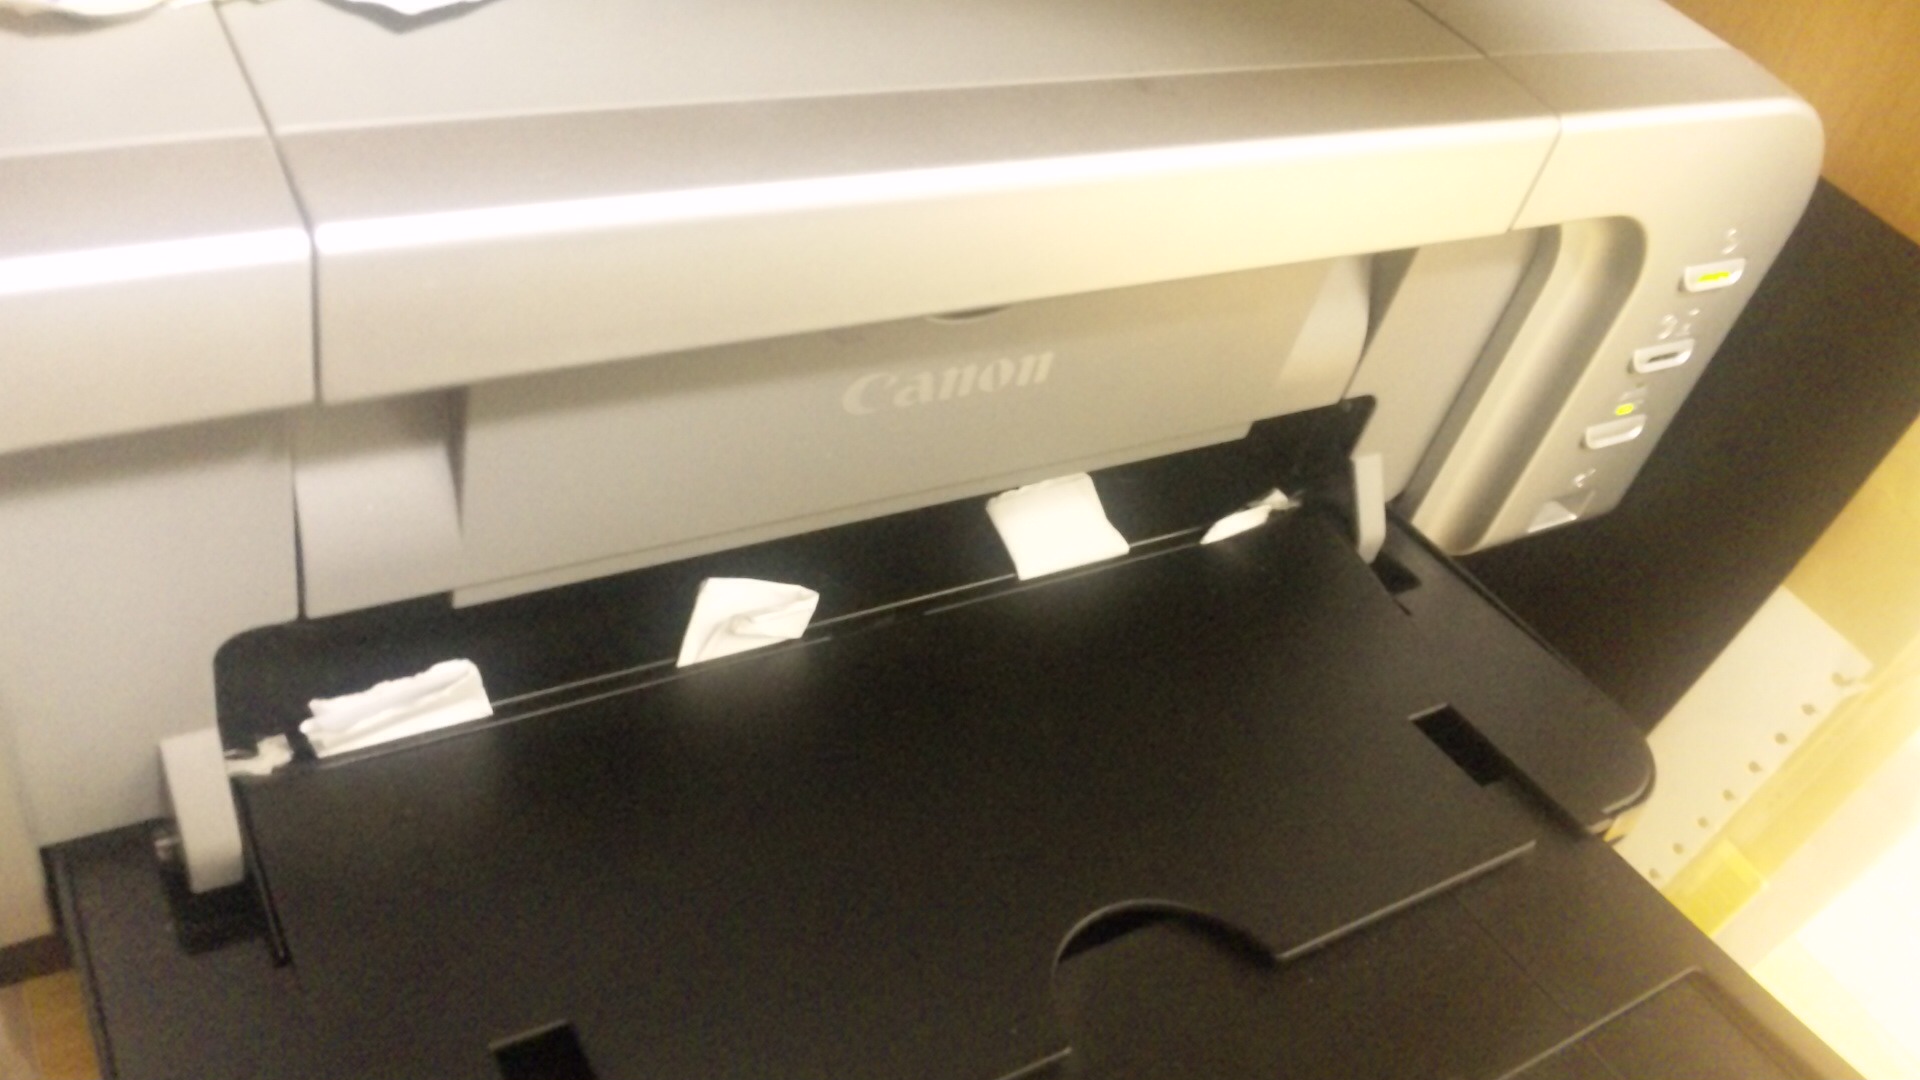 Canonのプリンタ（PIXUS）「1250 排紙トレイが閉じているため、印刷を行うことができません。」対処法_f0134538_4111816.jpg